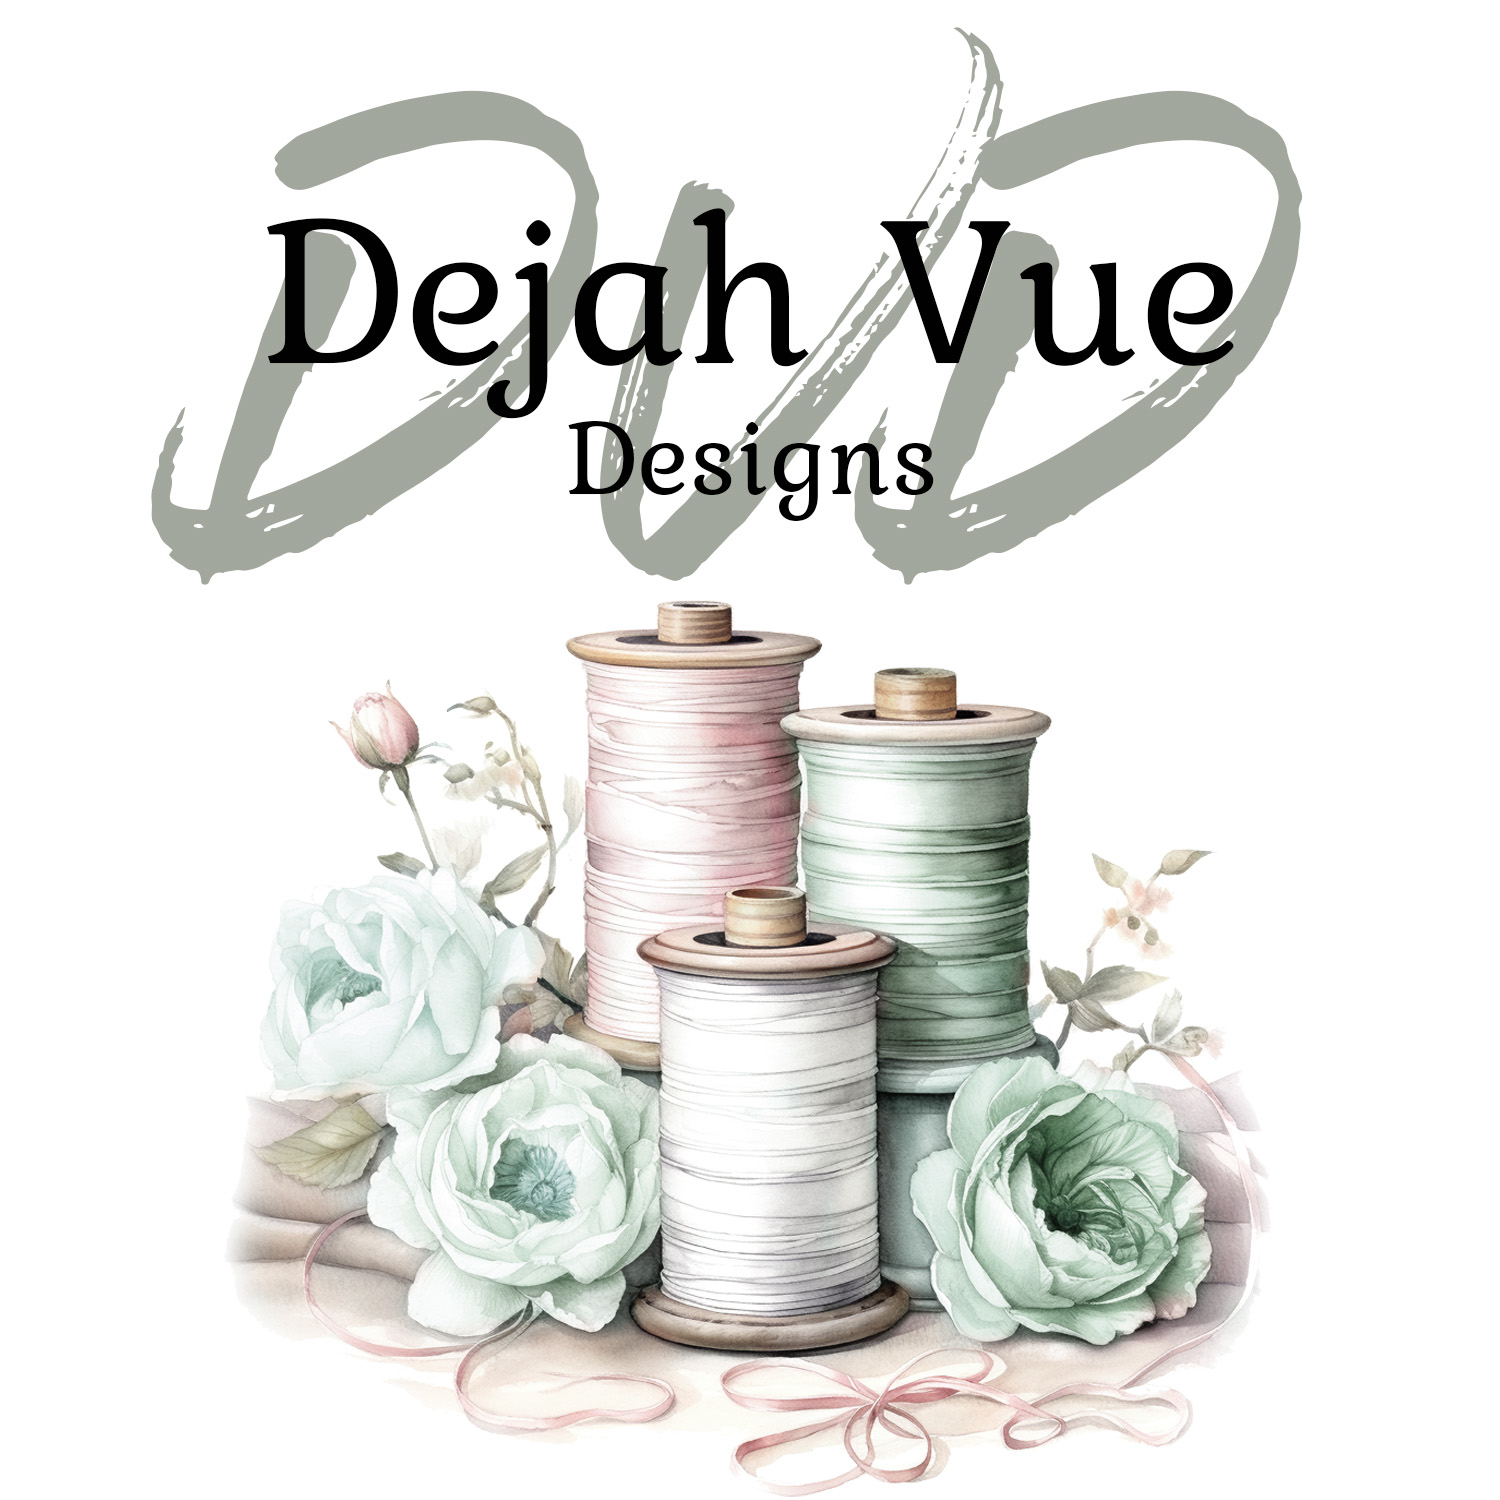 Dejah Vue Designs